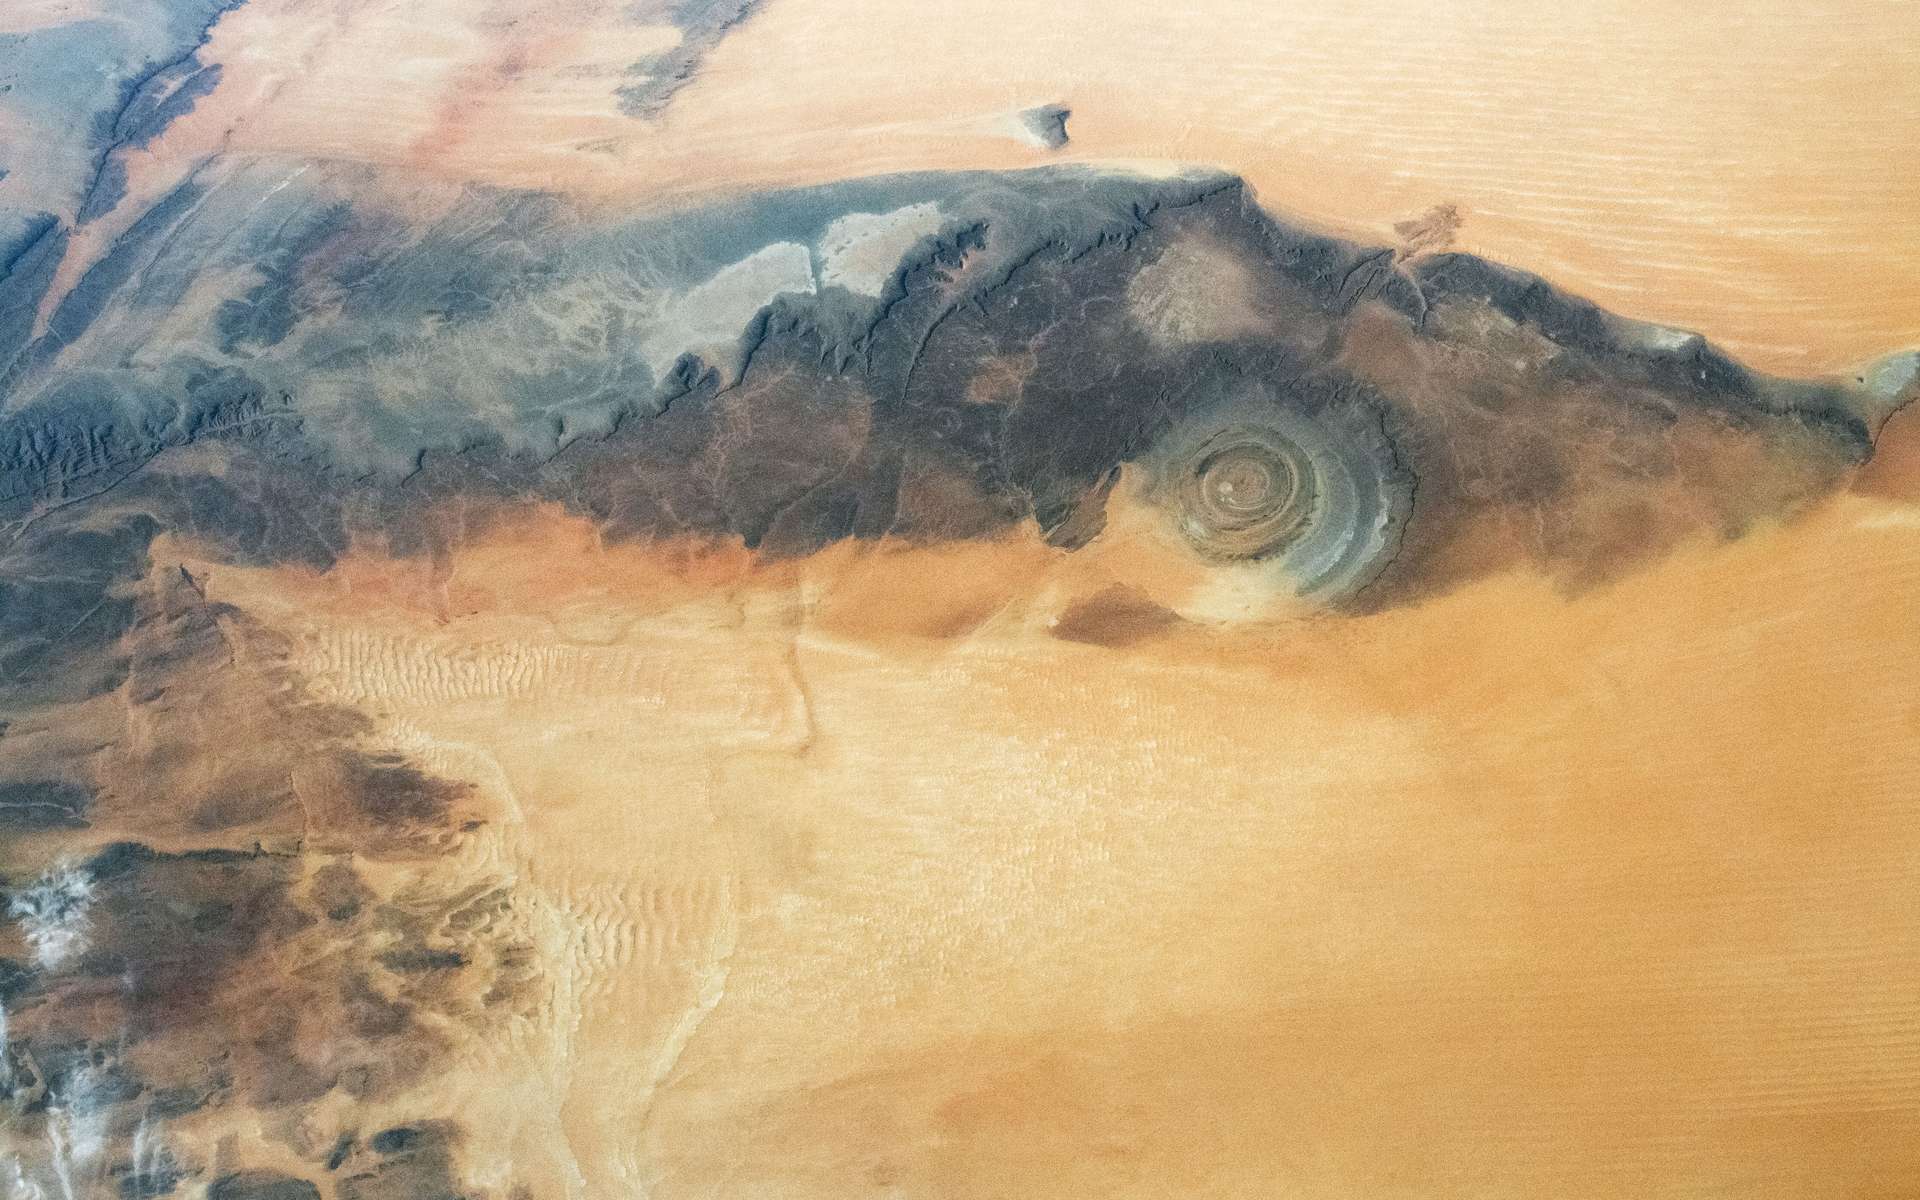 L'œil du Sahara vu de l'espace. © Nasa